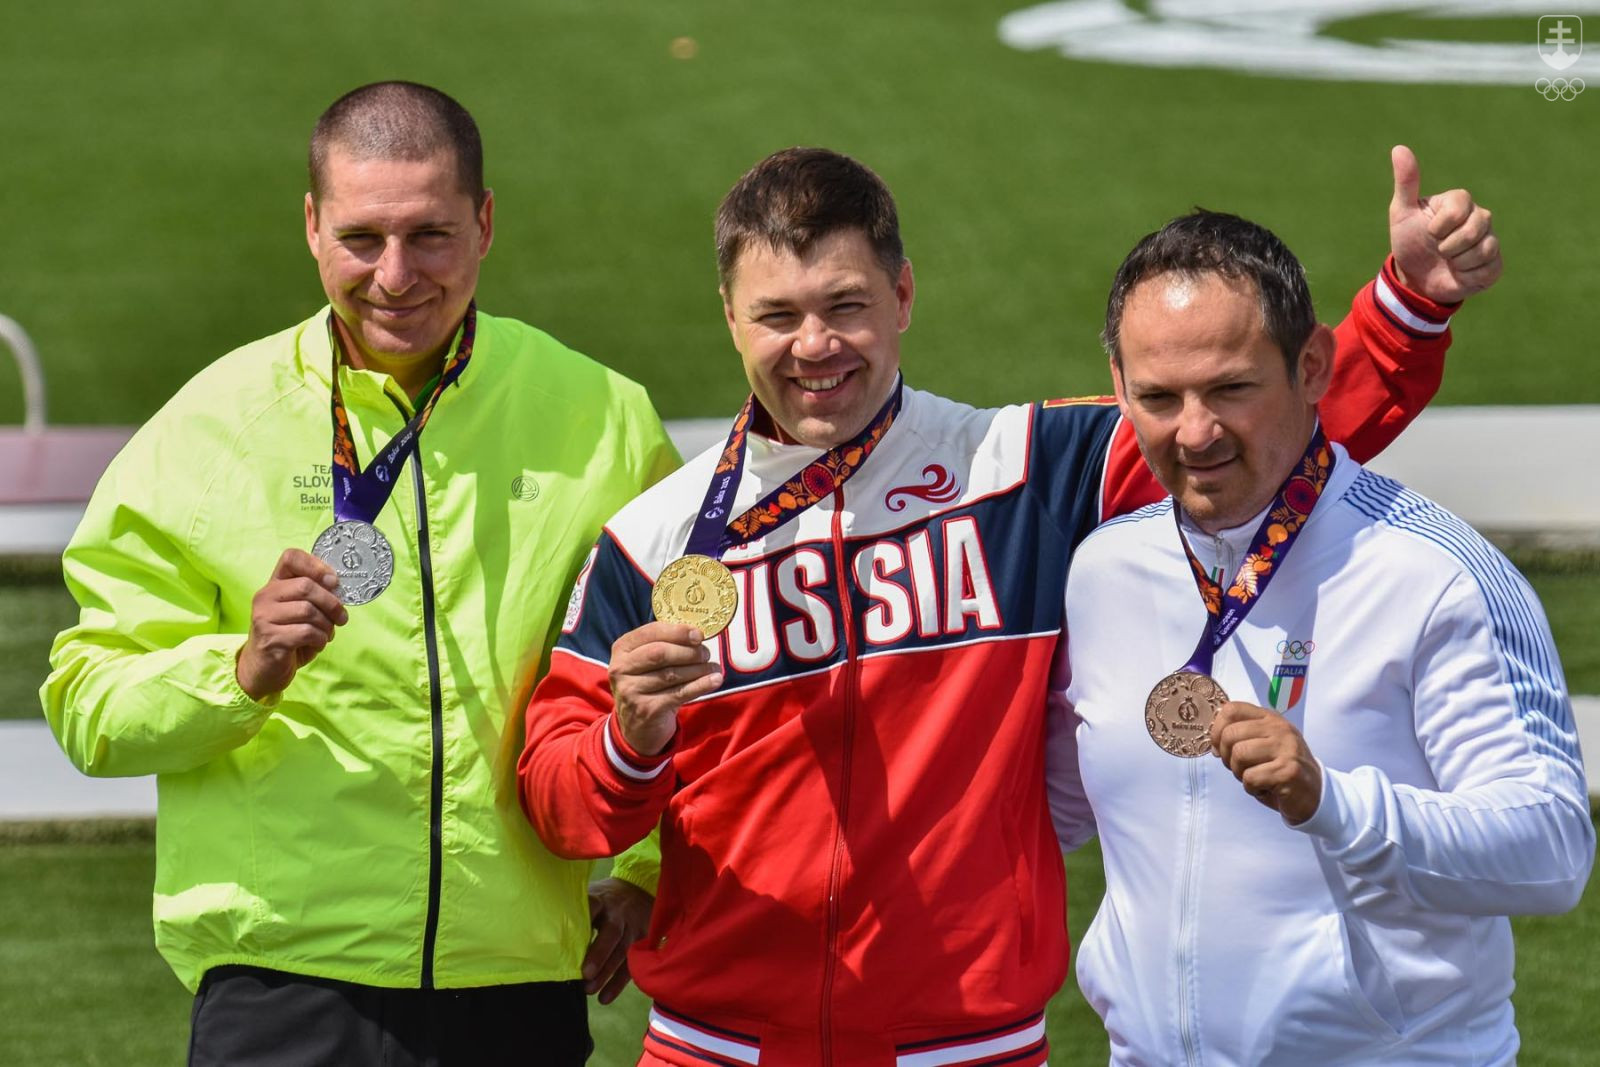 Medailisti súťaže trapistov - zľava strieborný Erik Varga, v strede zlatý Rus Alipov a vpravo bronzový Talian Pellielo. FOTO: JÁN SÚKUP, SOVo